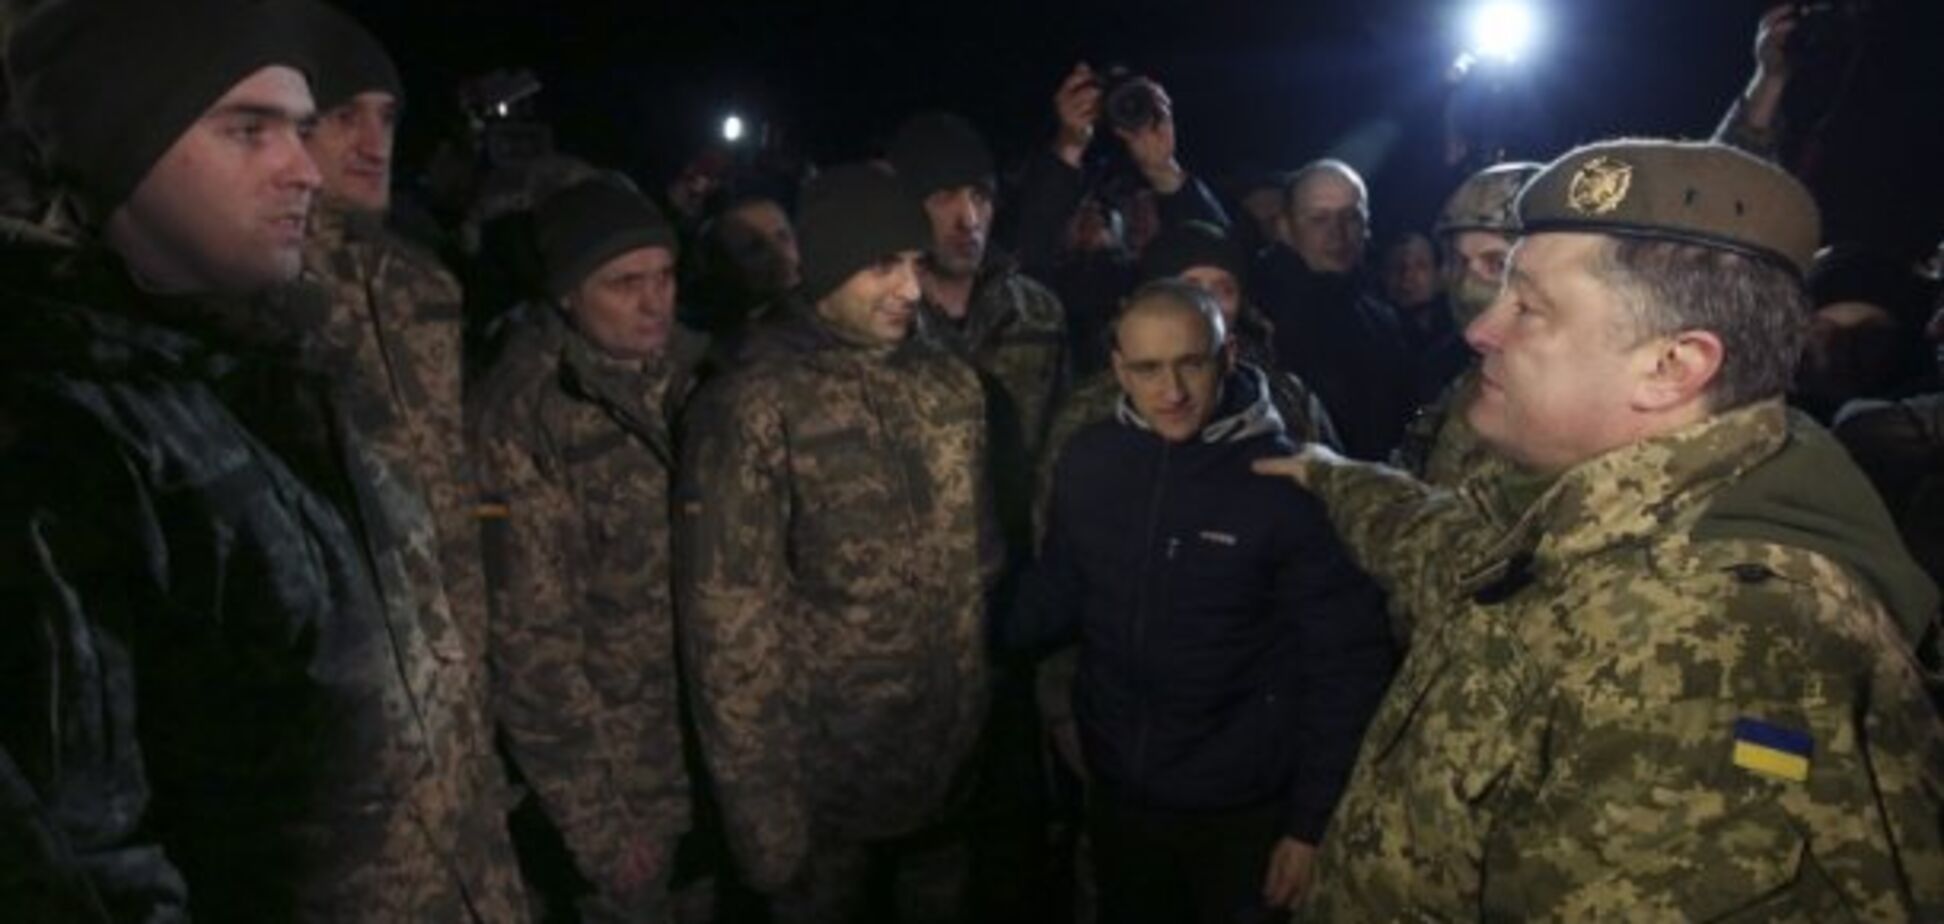 Военные отдельно от гражданских: стало известно, где будут лечить освобожденных из плена украинцев